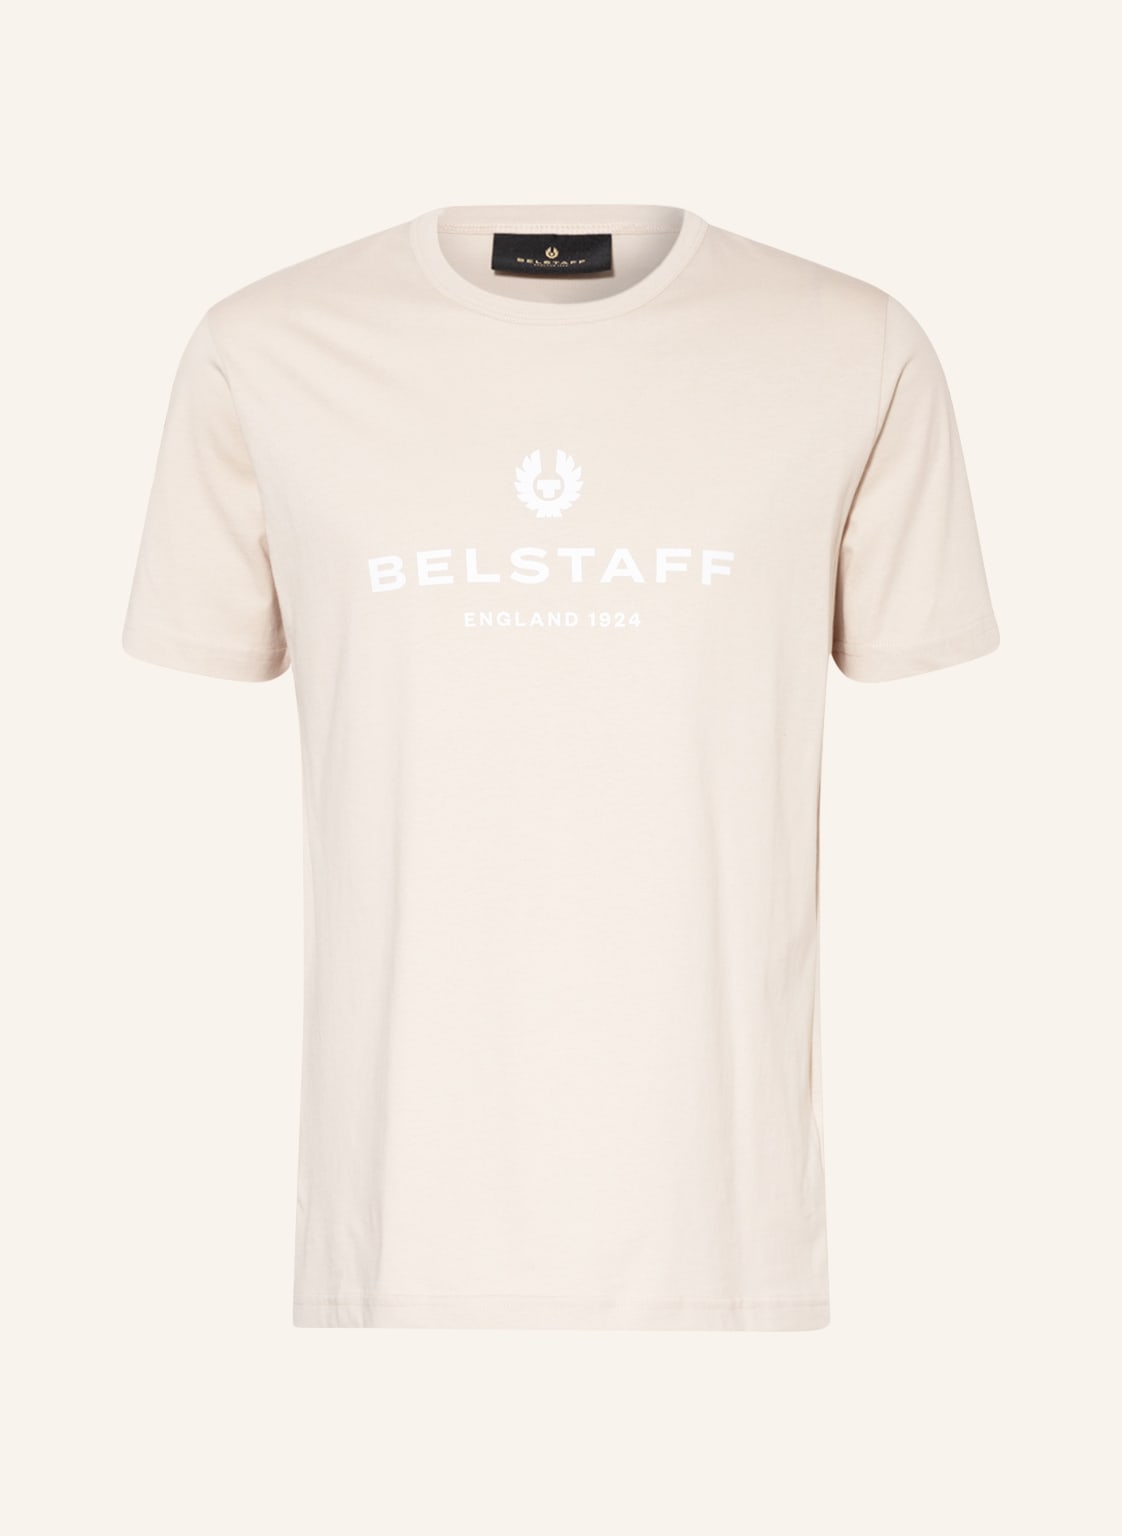 Belstaff T-Shirt 1924 50 €